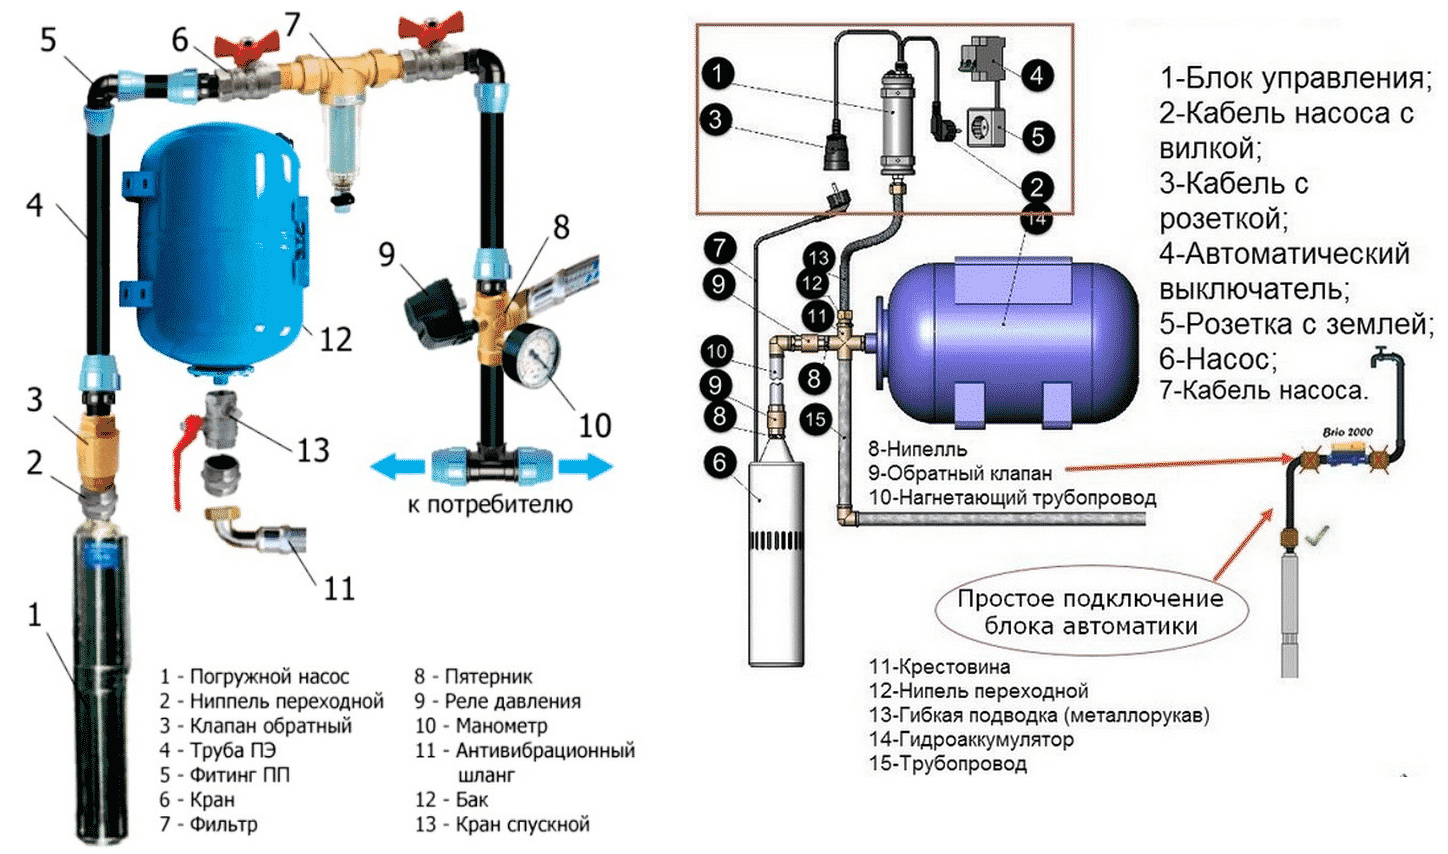 Регулировка реле давления воды для насосной станции - инструкция, устройство и принцип работы
регулировка реле давления воды для насосной станции - инструкция, устройство и принцип работы